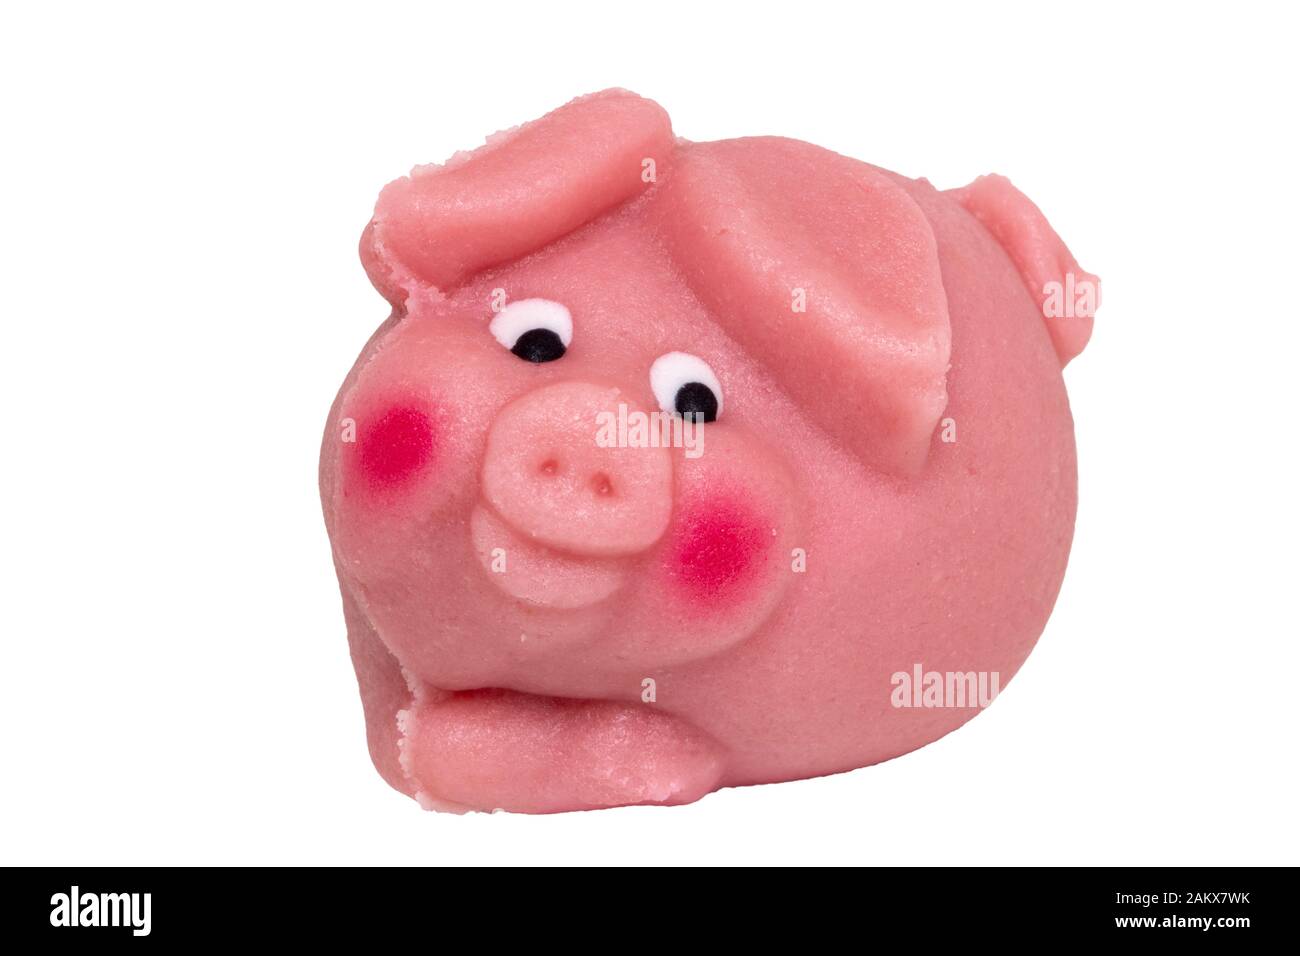 Isolation de la douceur du massepain. Gros plan d'un cochon rose fait de massepain comme symbole du bonheur pour le nouvel an isolé sur un fond blanc. Macro p Banque D'Images